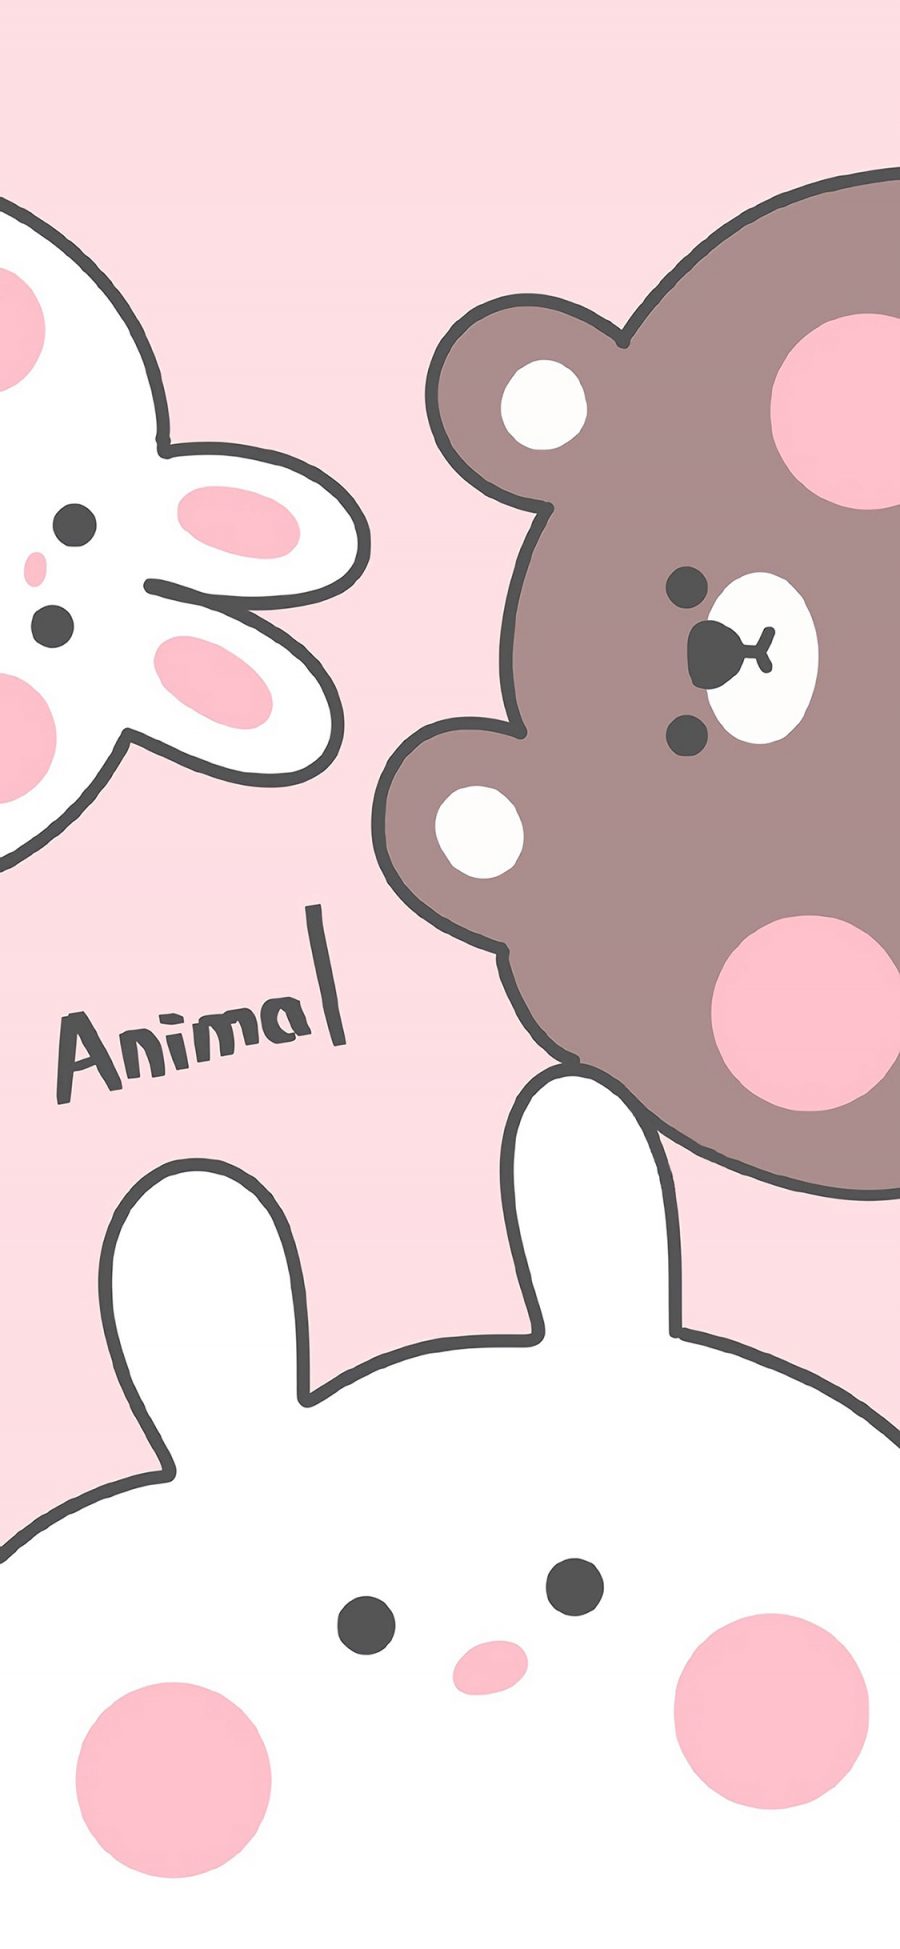 [2436×1125]动物 animal 兔子 小熊 粉色 苹果手机动漫壁纸图片